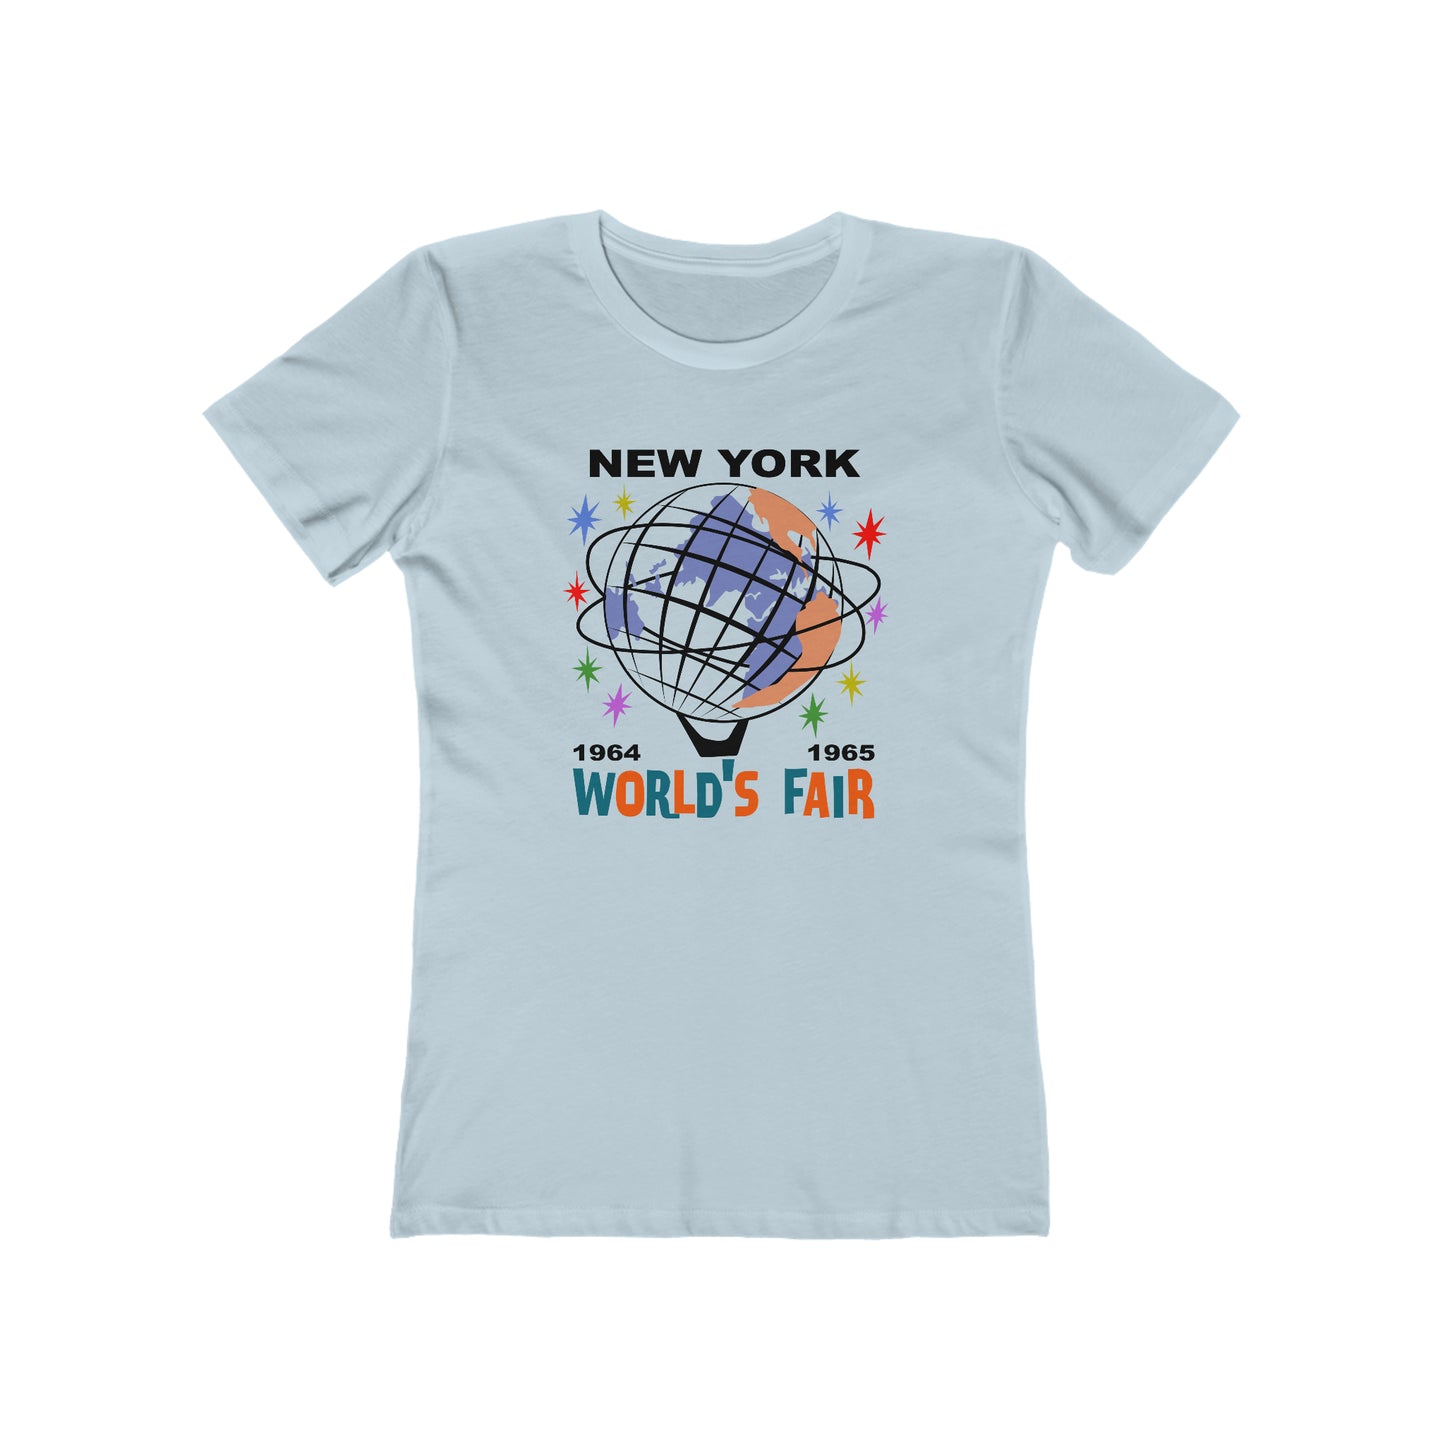 New York World's Fair - Women's T-Shirt